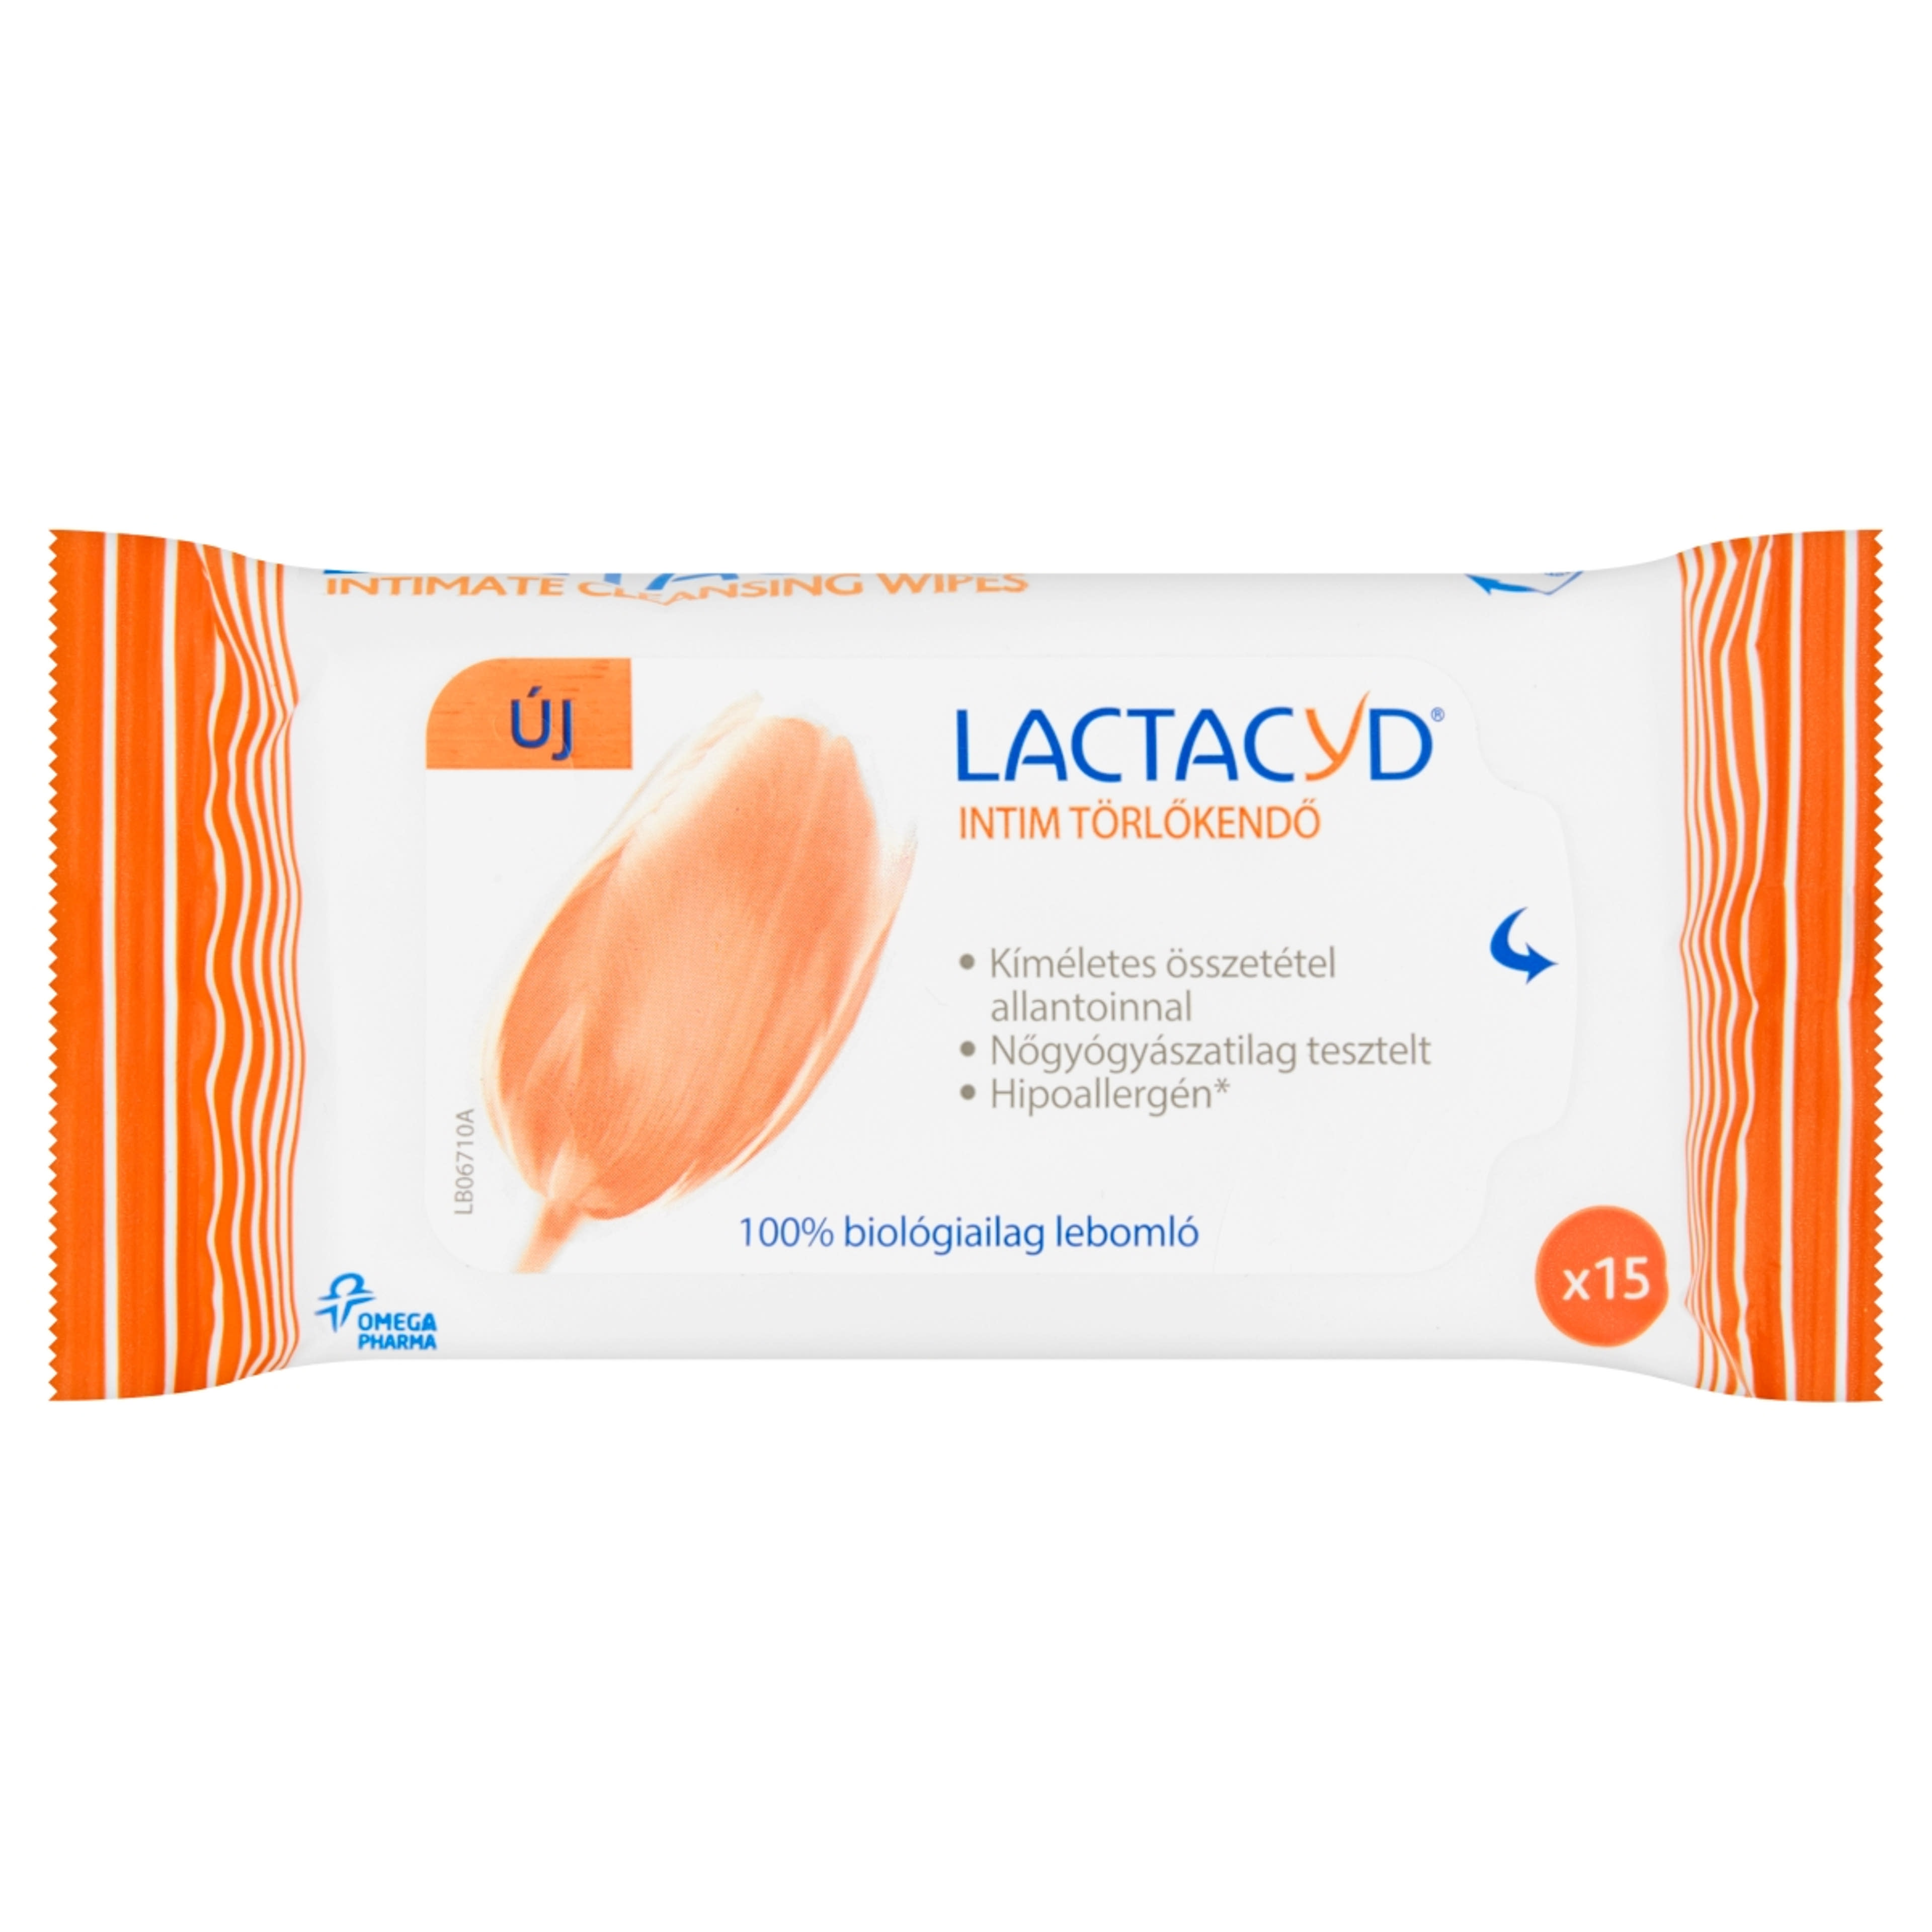 Lactacyd intim törlőkendő - 15 db